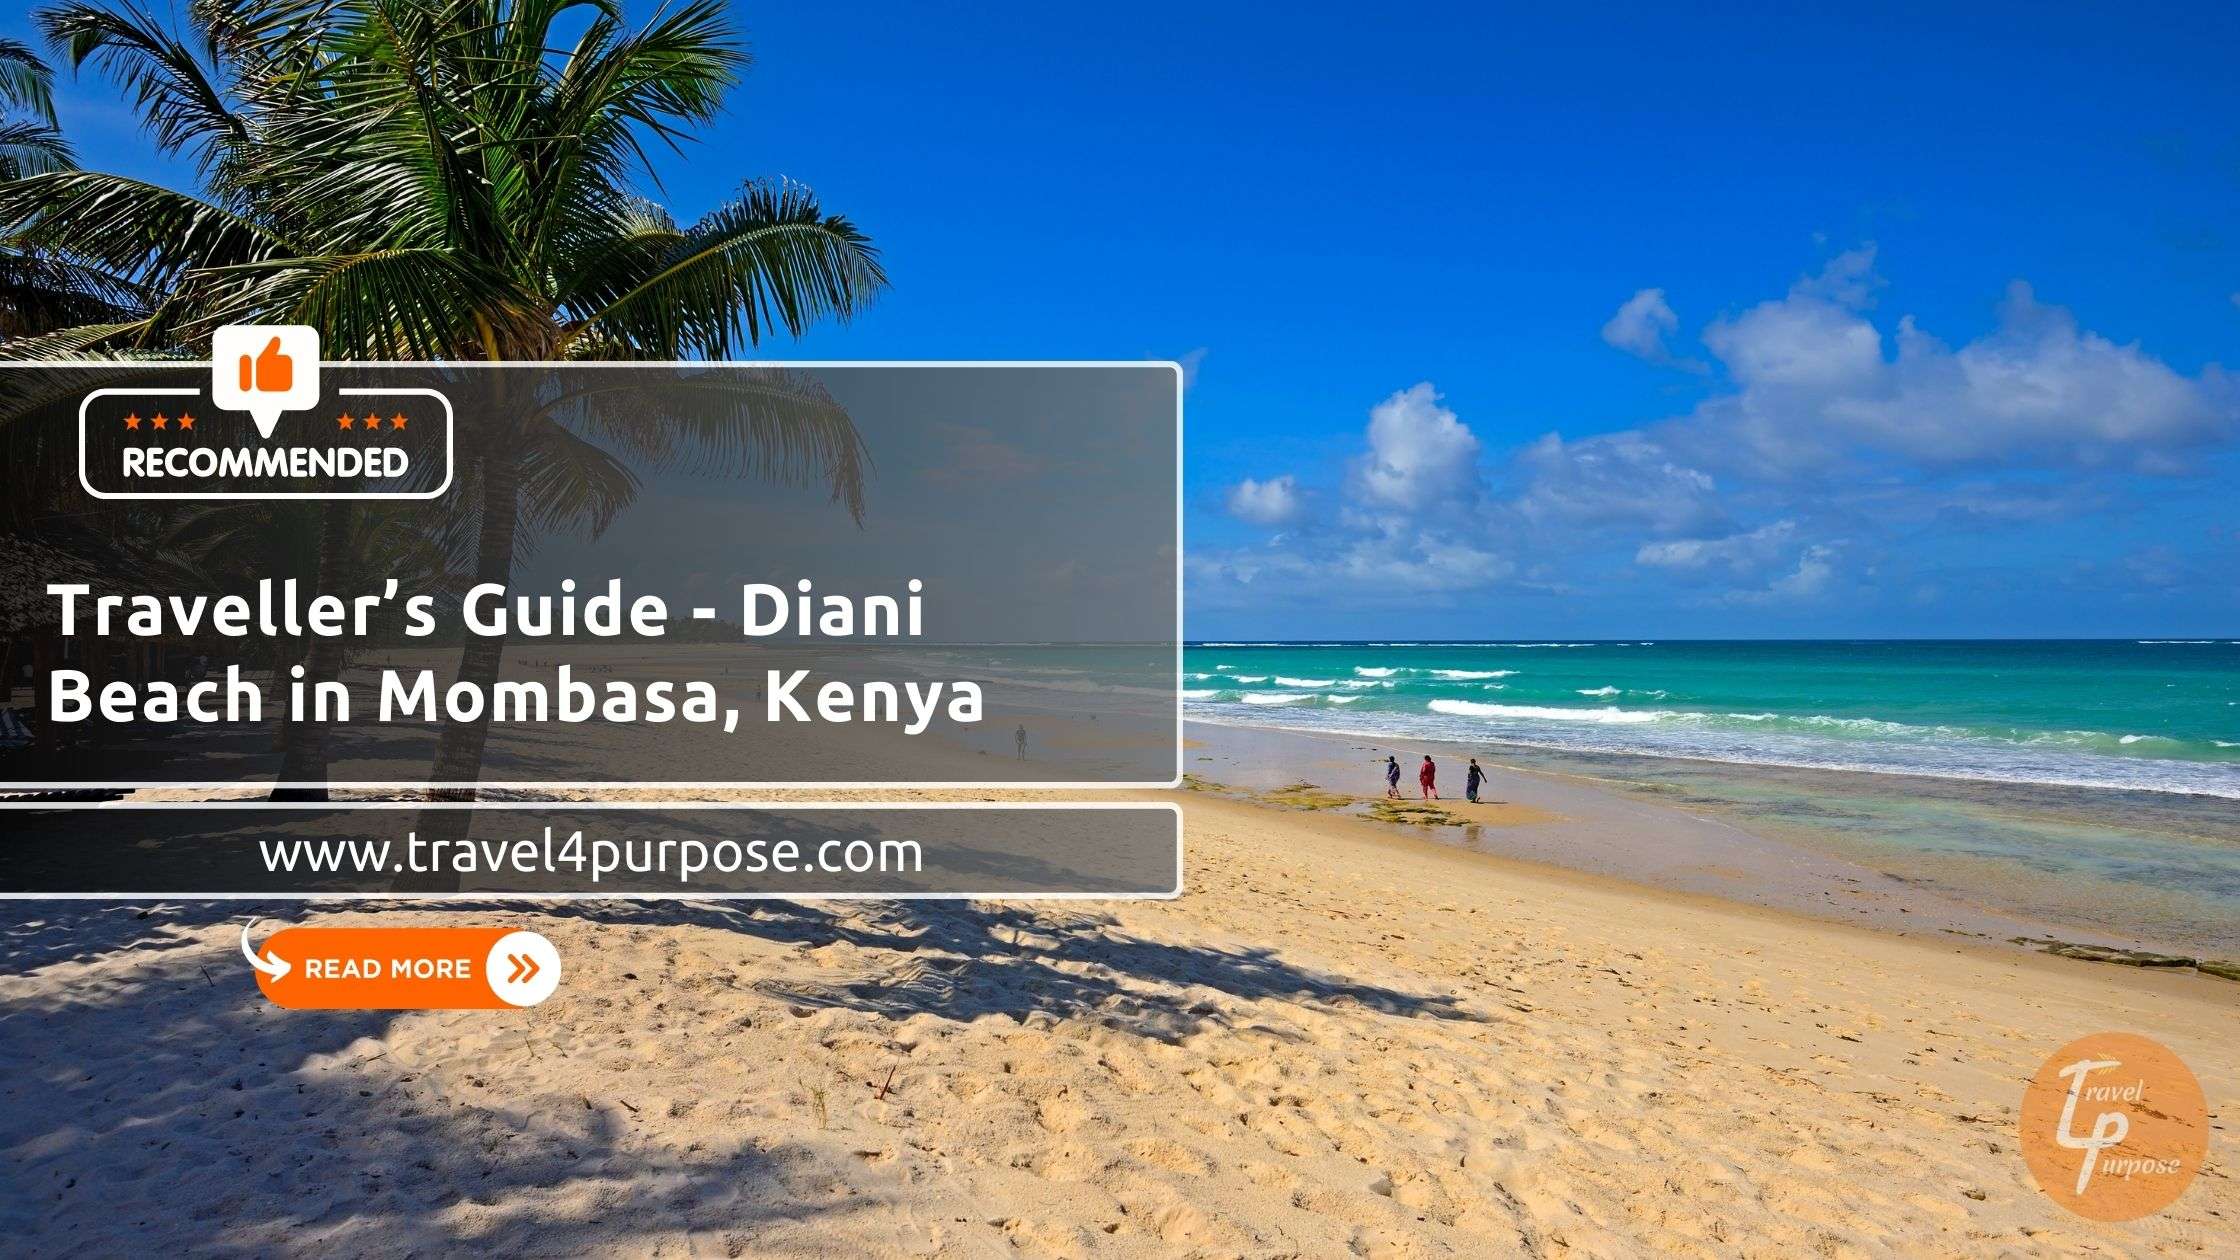 Traveller’s Guide - Diani Beach in Mombasa, Kenya